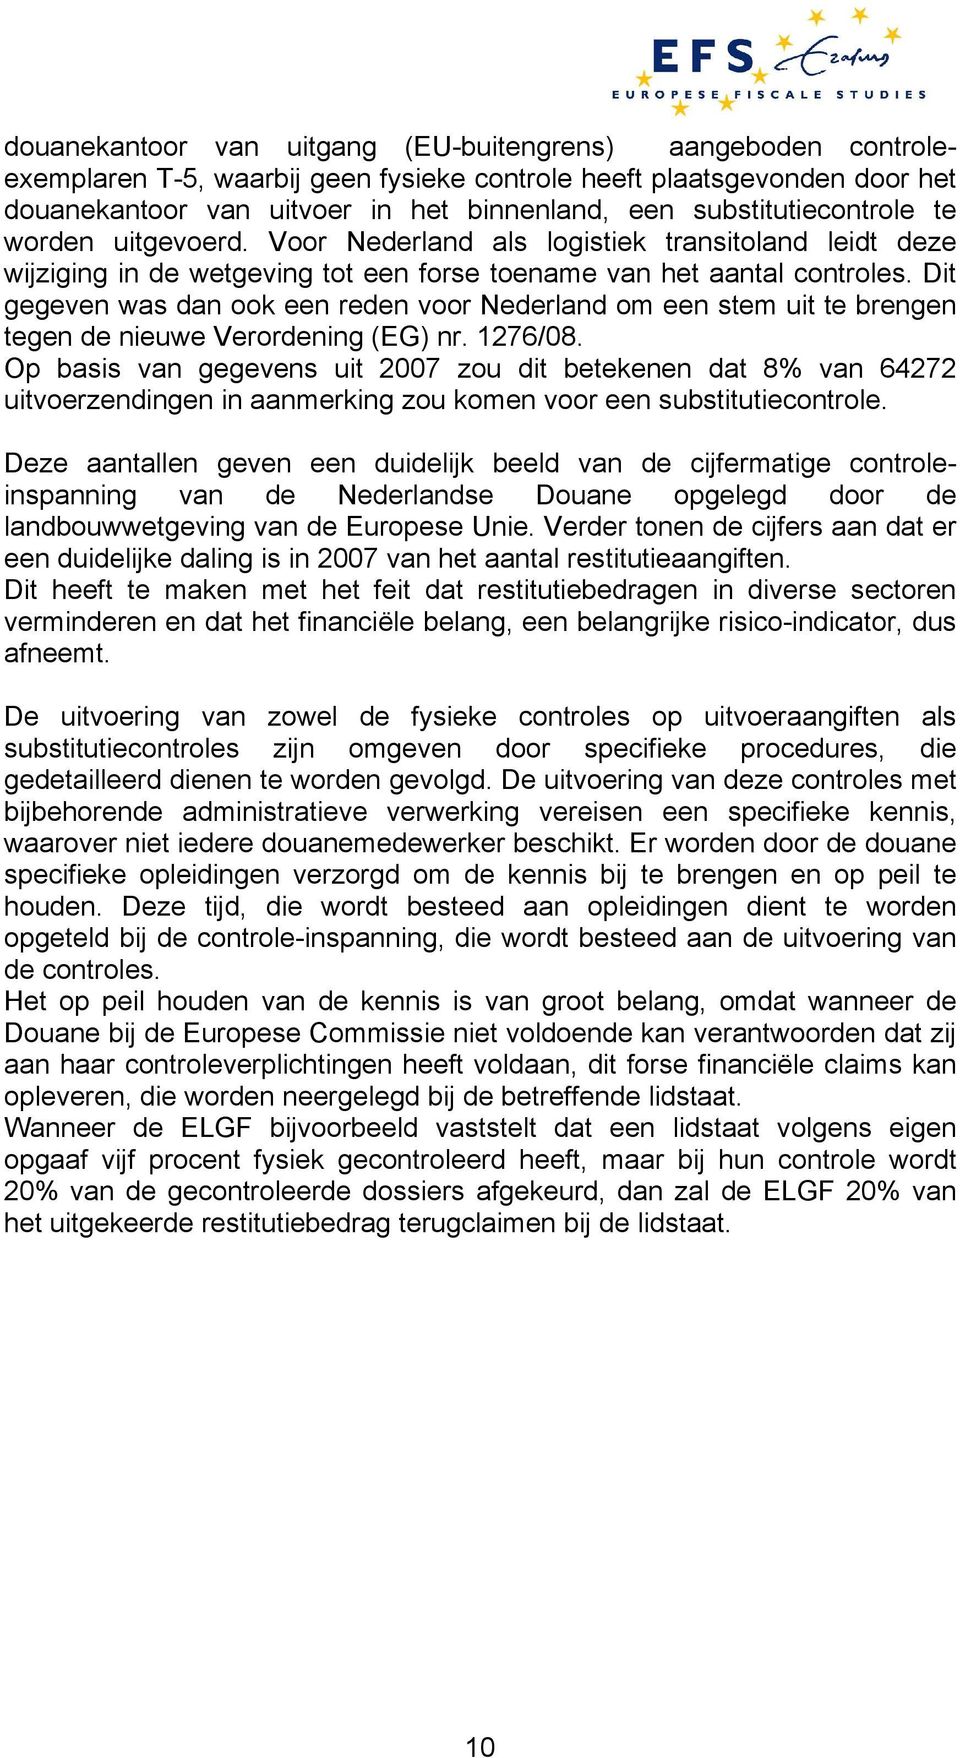 Dit gegeven was dan ook een reden voor Nederland om een stem uit te brengen tegen de nieuwe Verordening (EG) nr. 1276/08.